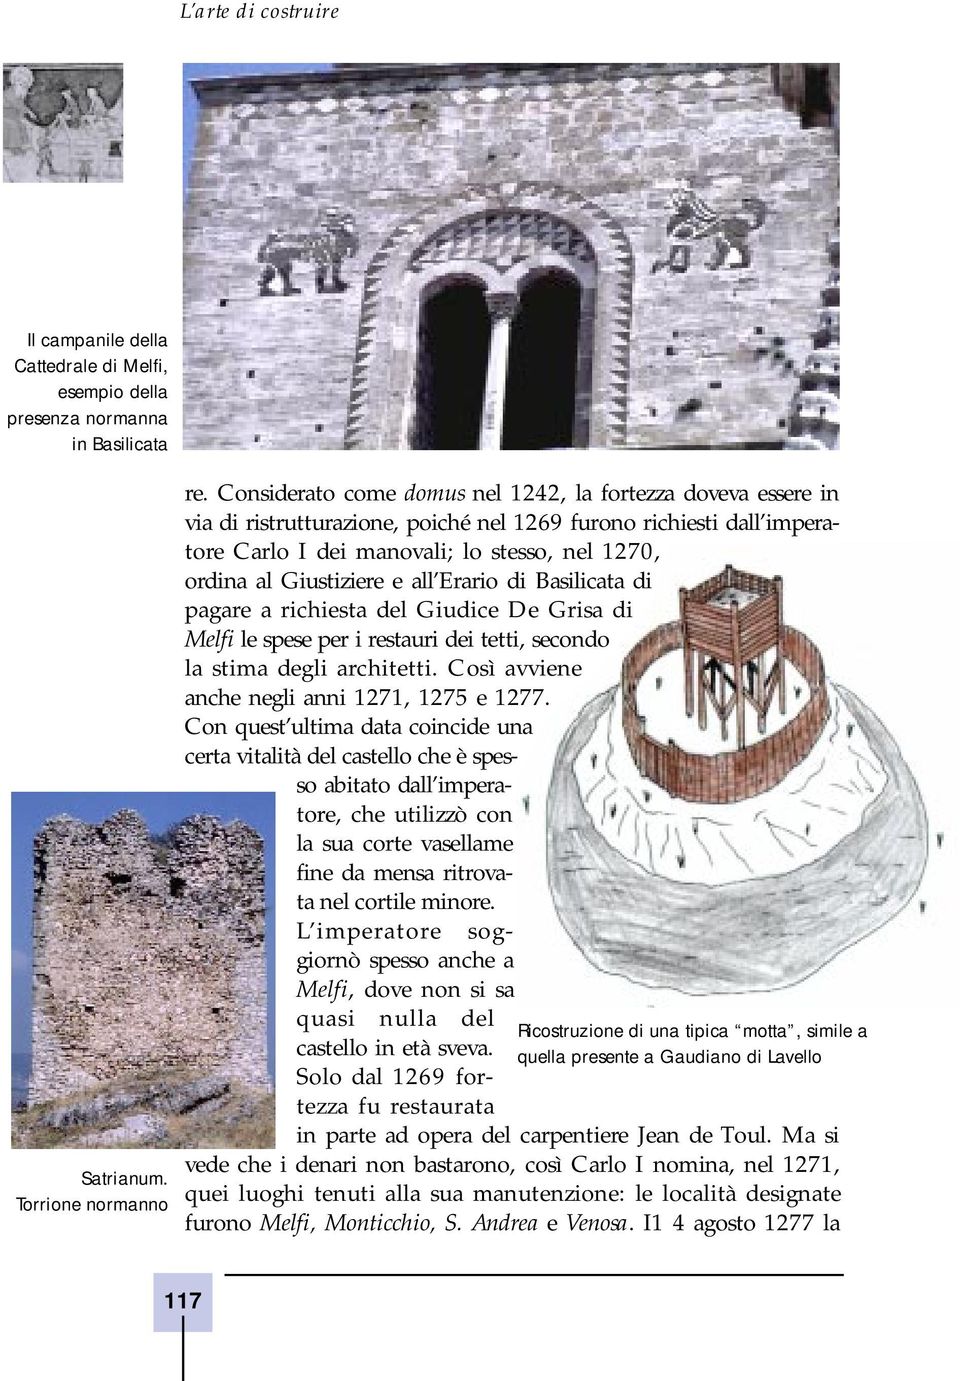 Giustiziere e all Erario di Basilicata di pagare a richiesta del Giudice De Grisa di Melfi le spese per i restauri dei tetti, secondo la stima degli architetti.